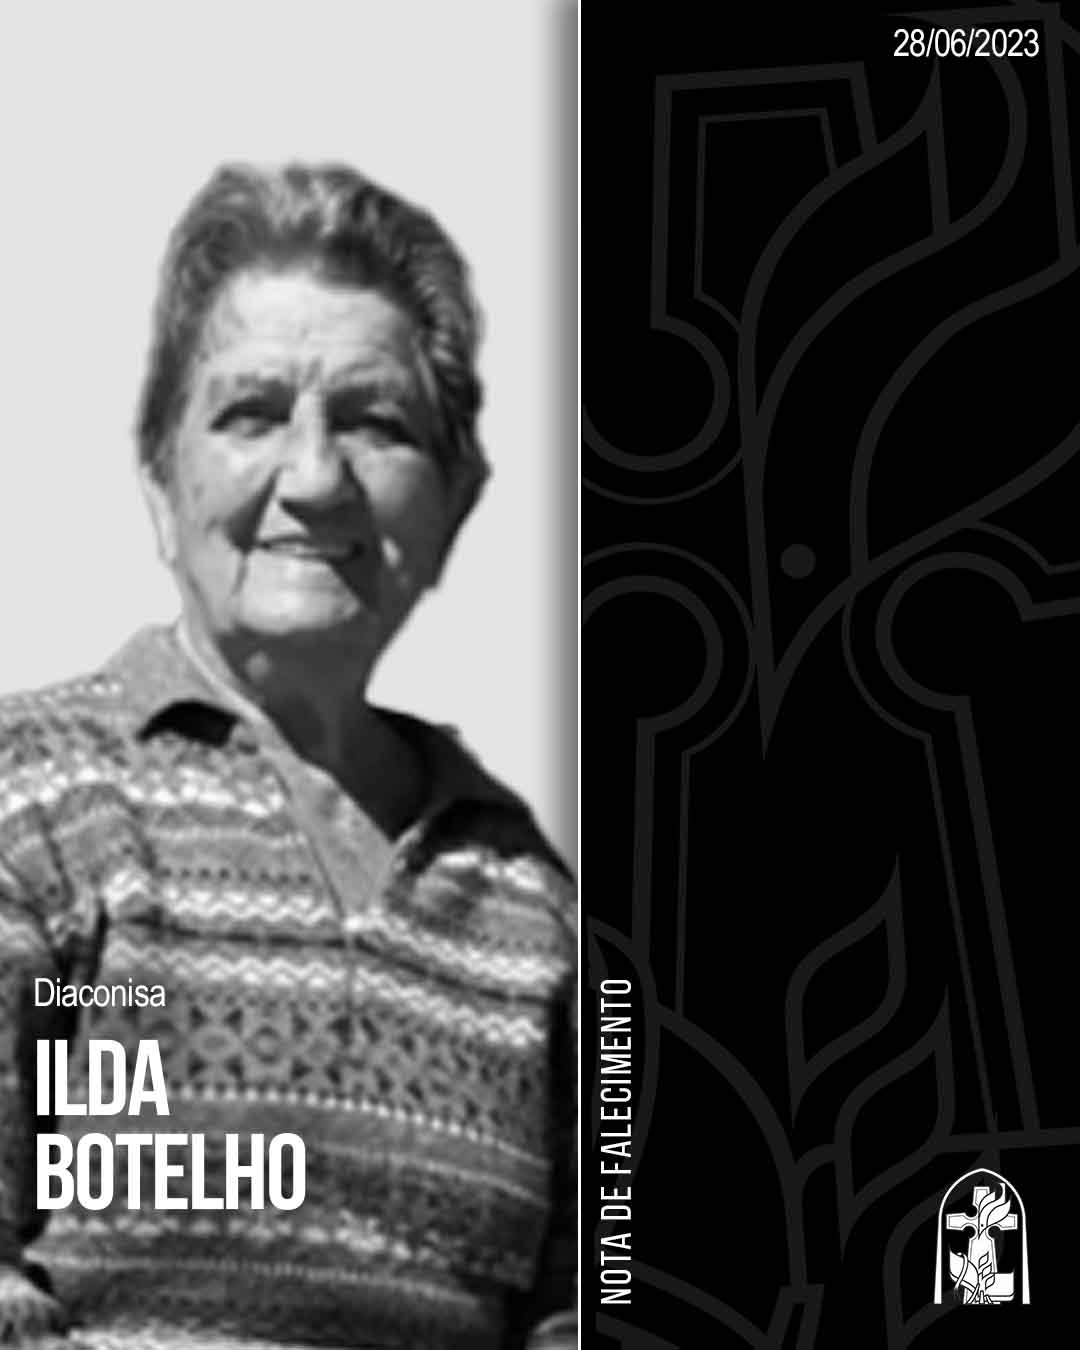 Ilda Botelho